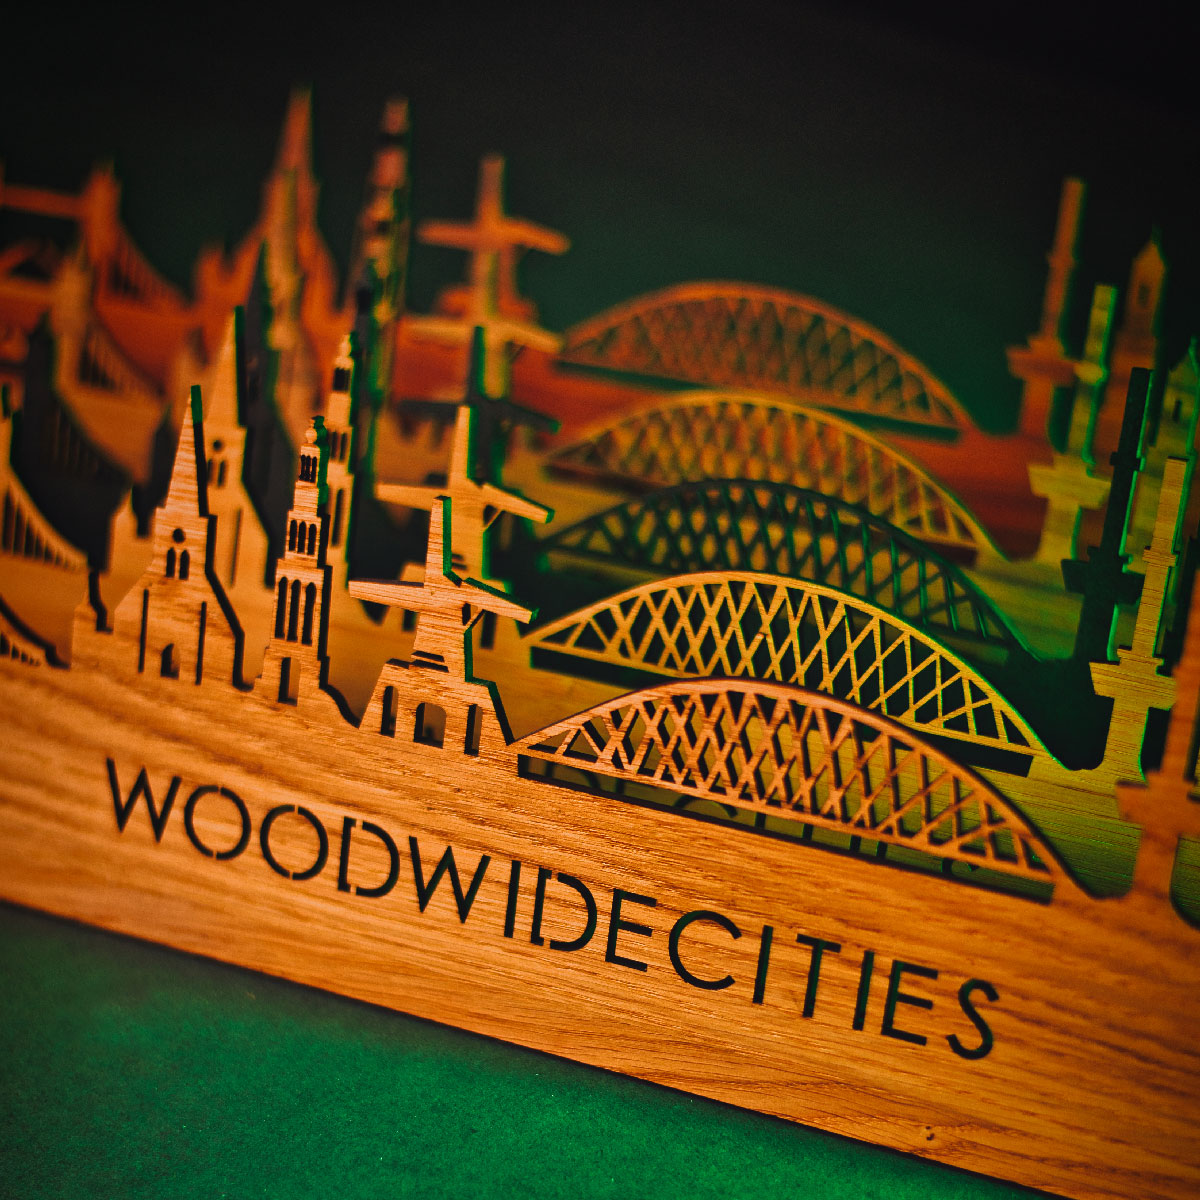 Skyline Klok Maassluis Palissander houten cadeau wanddecoratie relatiegeschenk van WoodWideCities